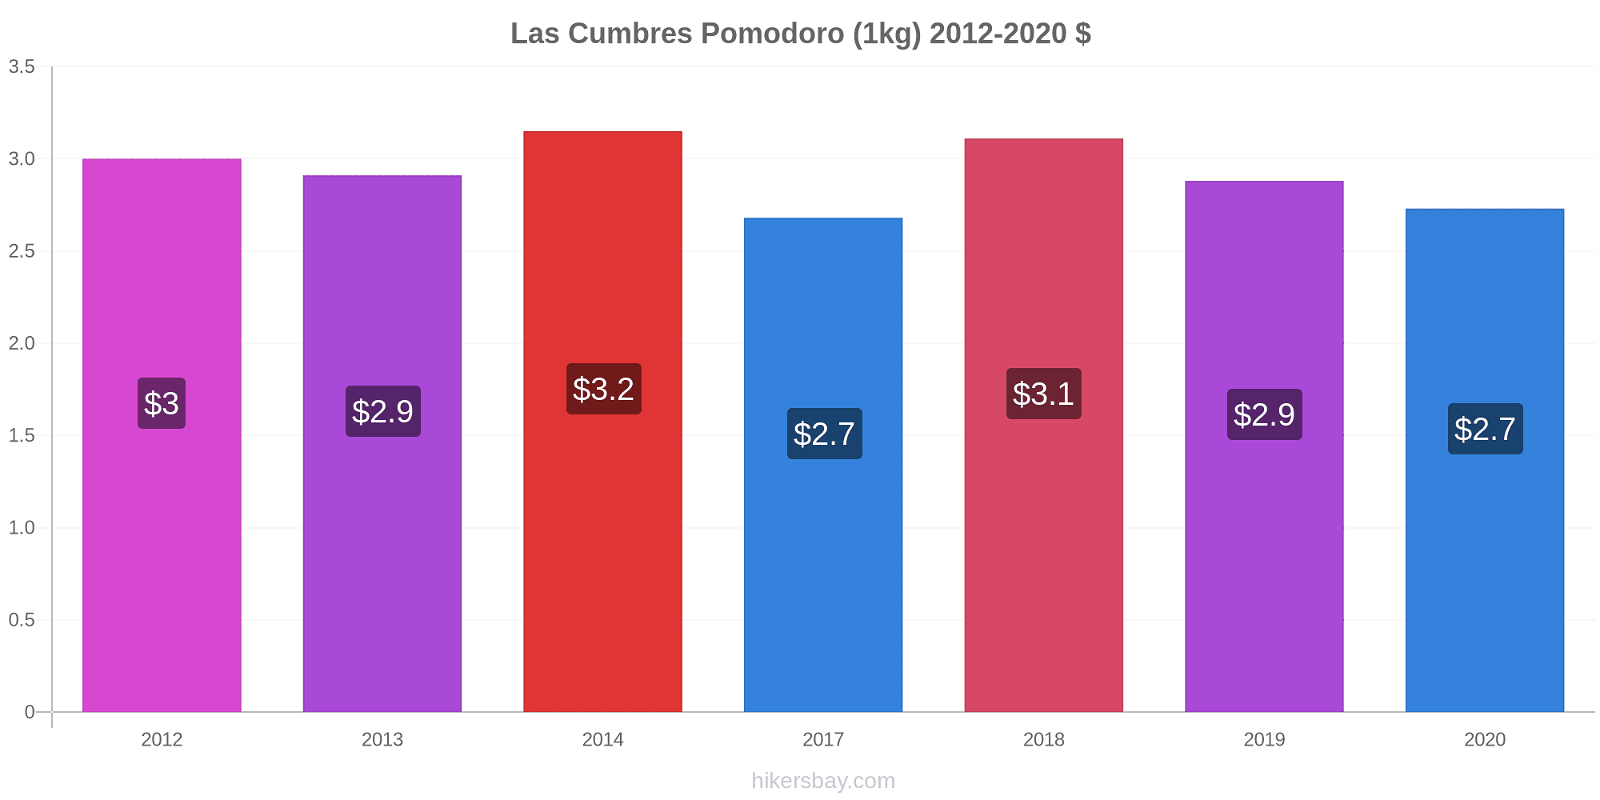 Las Cumbres variazioni di prezzo Pomodoro (1kg) hikersbay.com